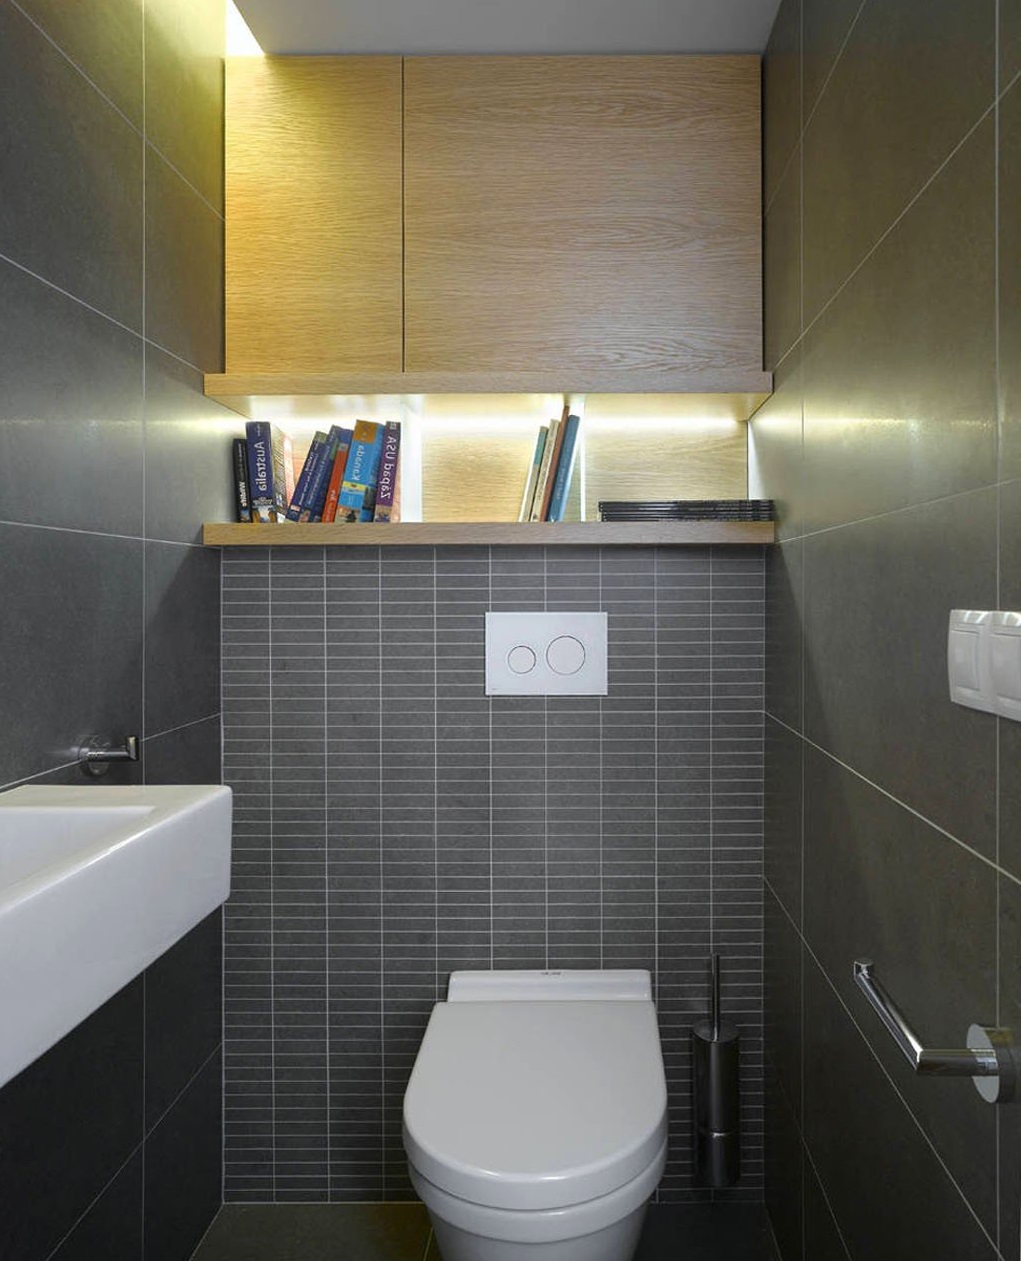 Светильник в туалет дизайн